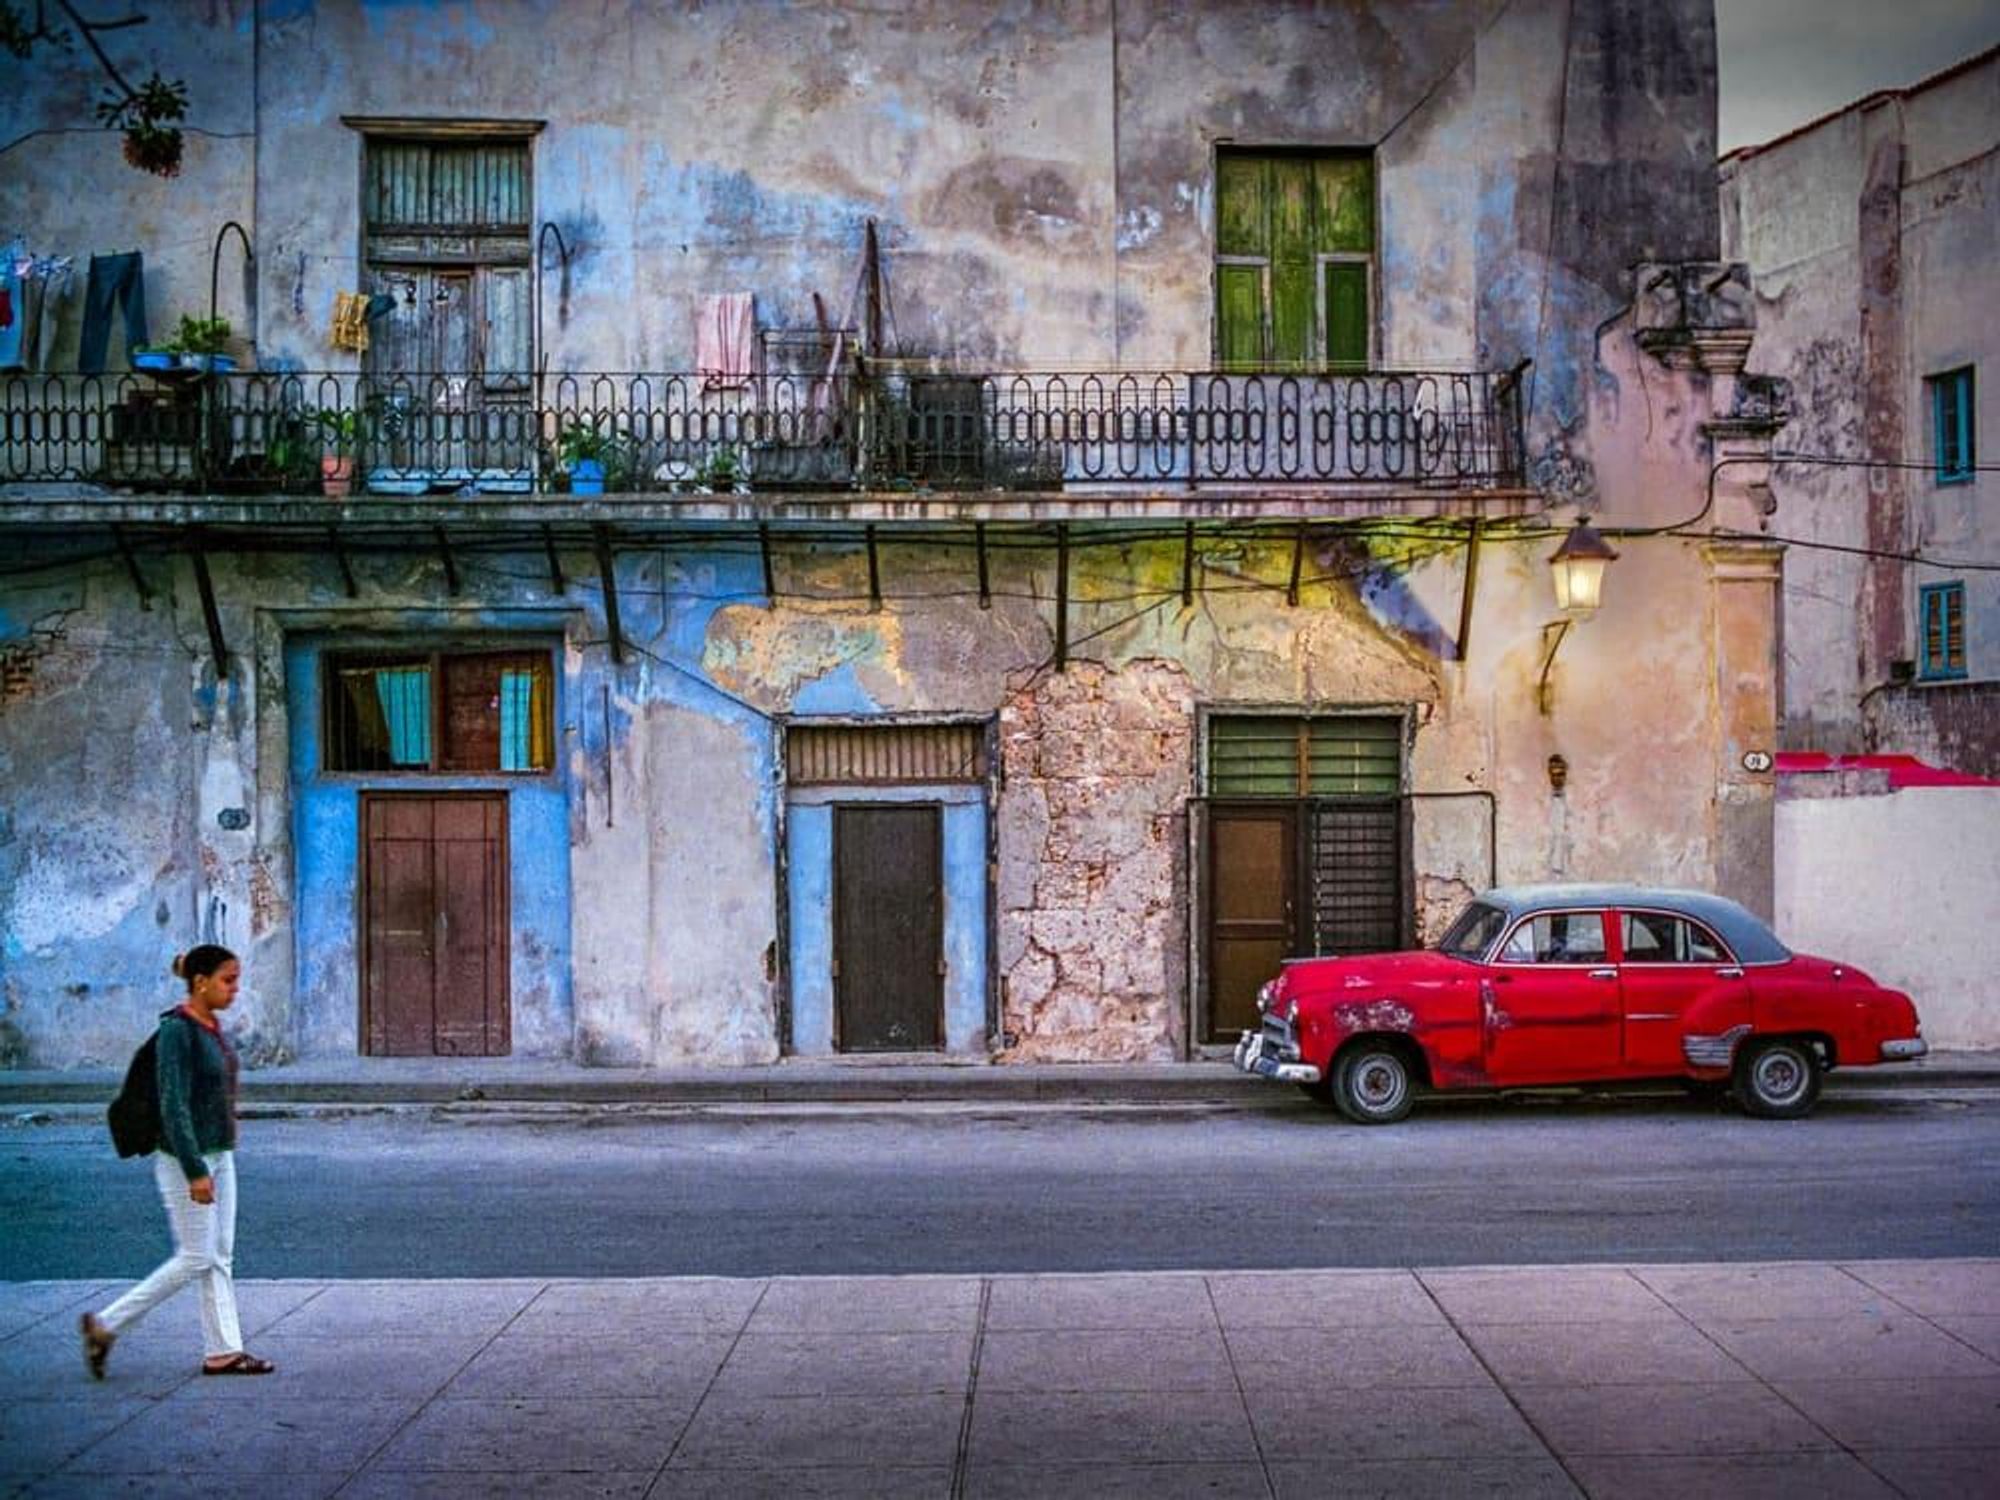 Red Car at Dusk, Cuba 2001